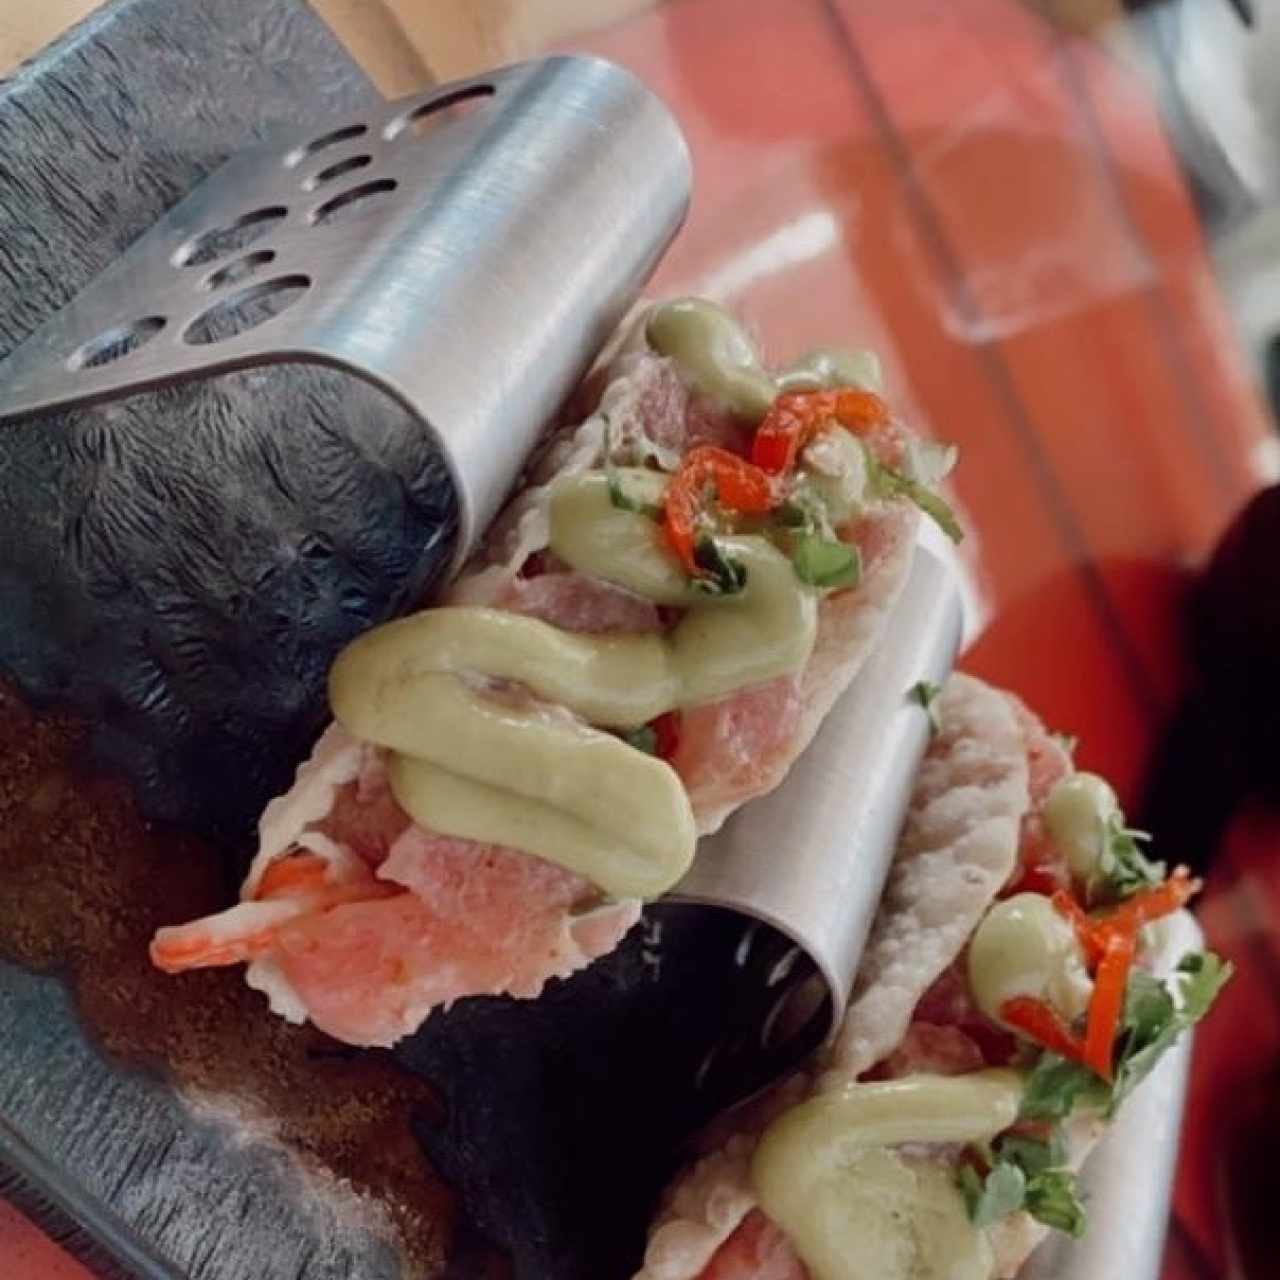 taquitos de salmon 🙌🏻 muy frescos y delicioso ! 